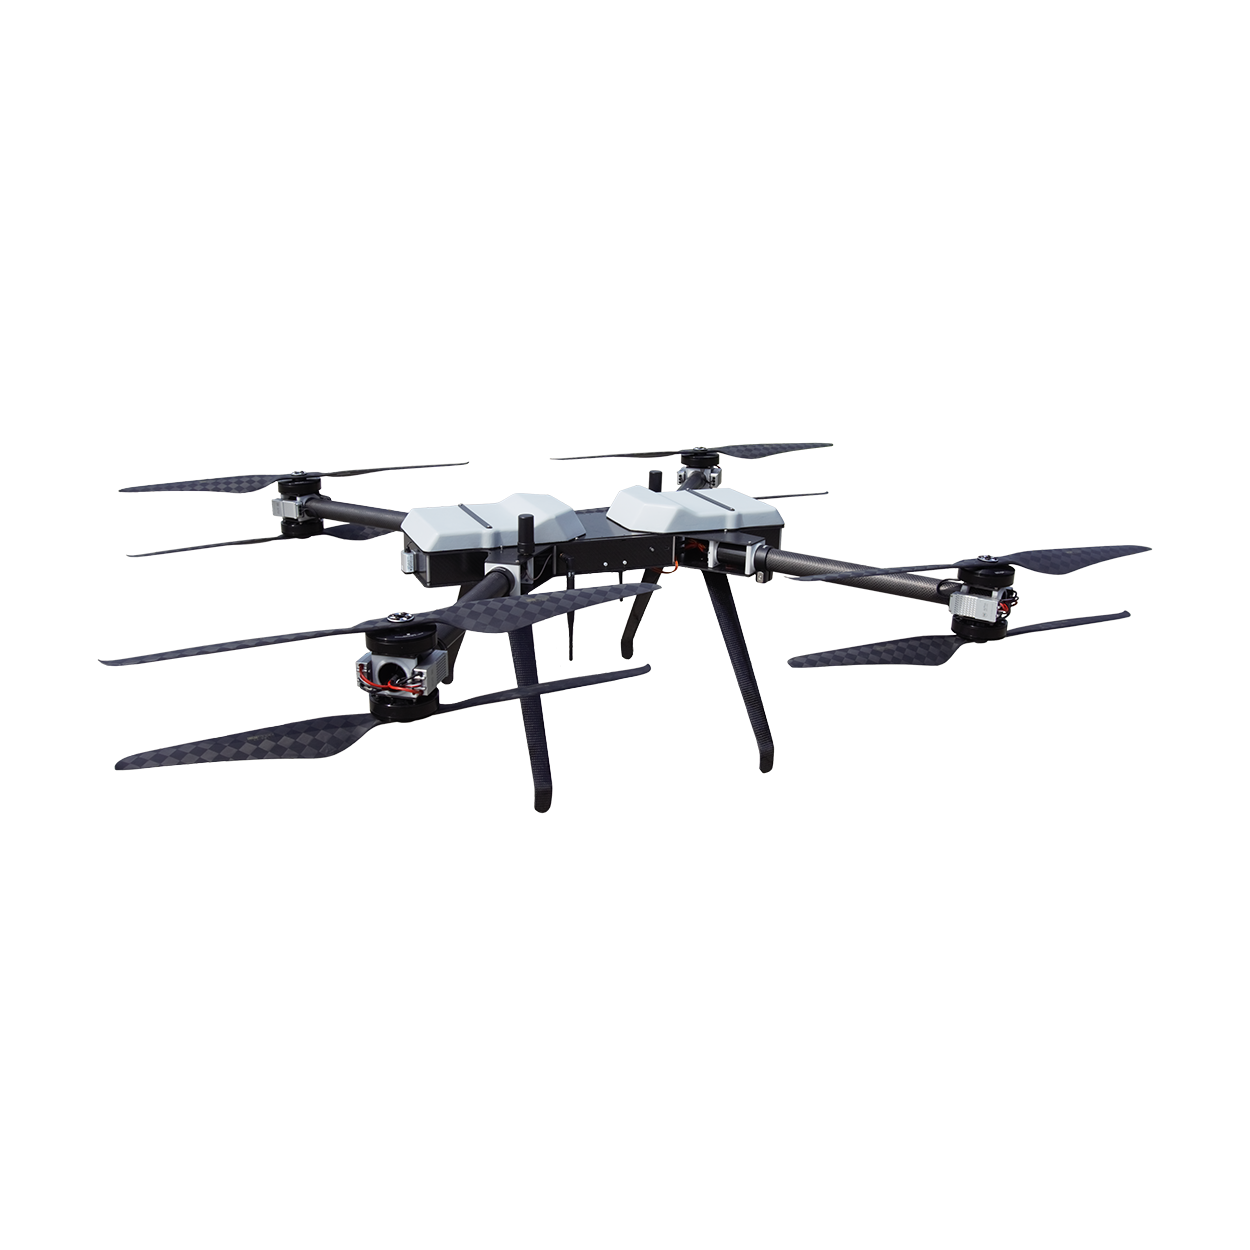 Die Hanseatic Drohne X825 ist eine vielseitig einsetzbare Multirotor-Drohne für autonome UAS-Einsätze außerhalb der Sichtweite (BVLOS).